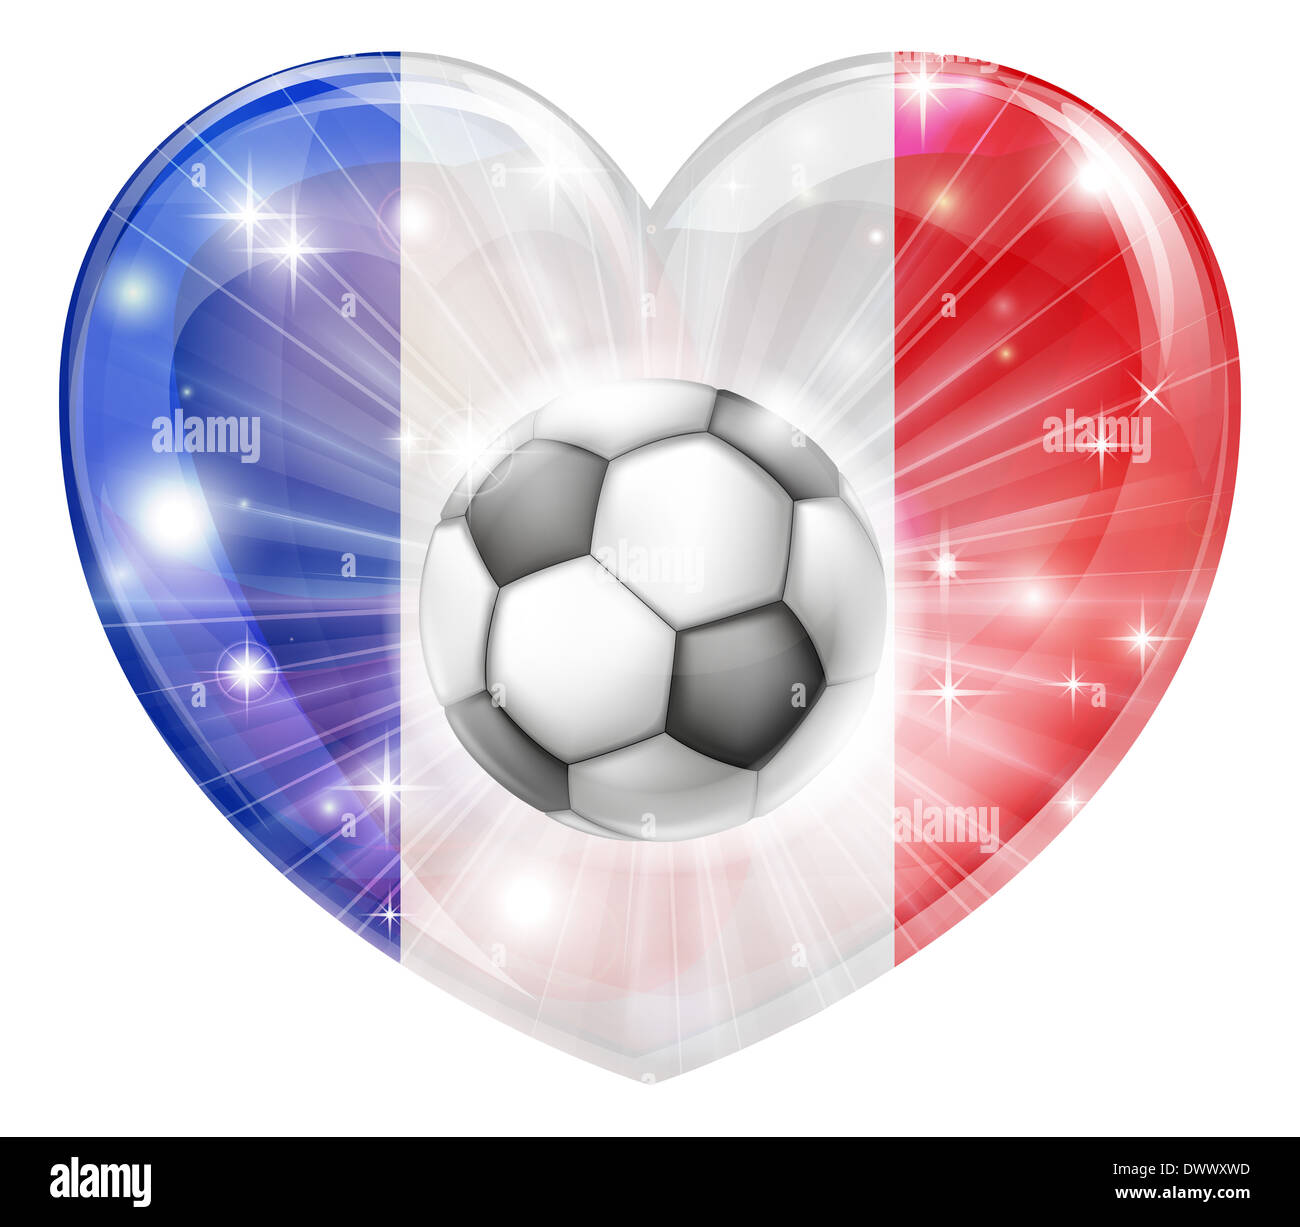 France football soccer ball flag love heart concept avec le drapeau Français en forme de coeur et un ballon de soccer de prendre l'avion Banque D'Images